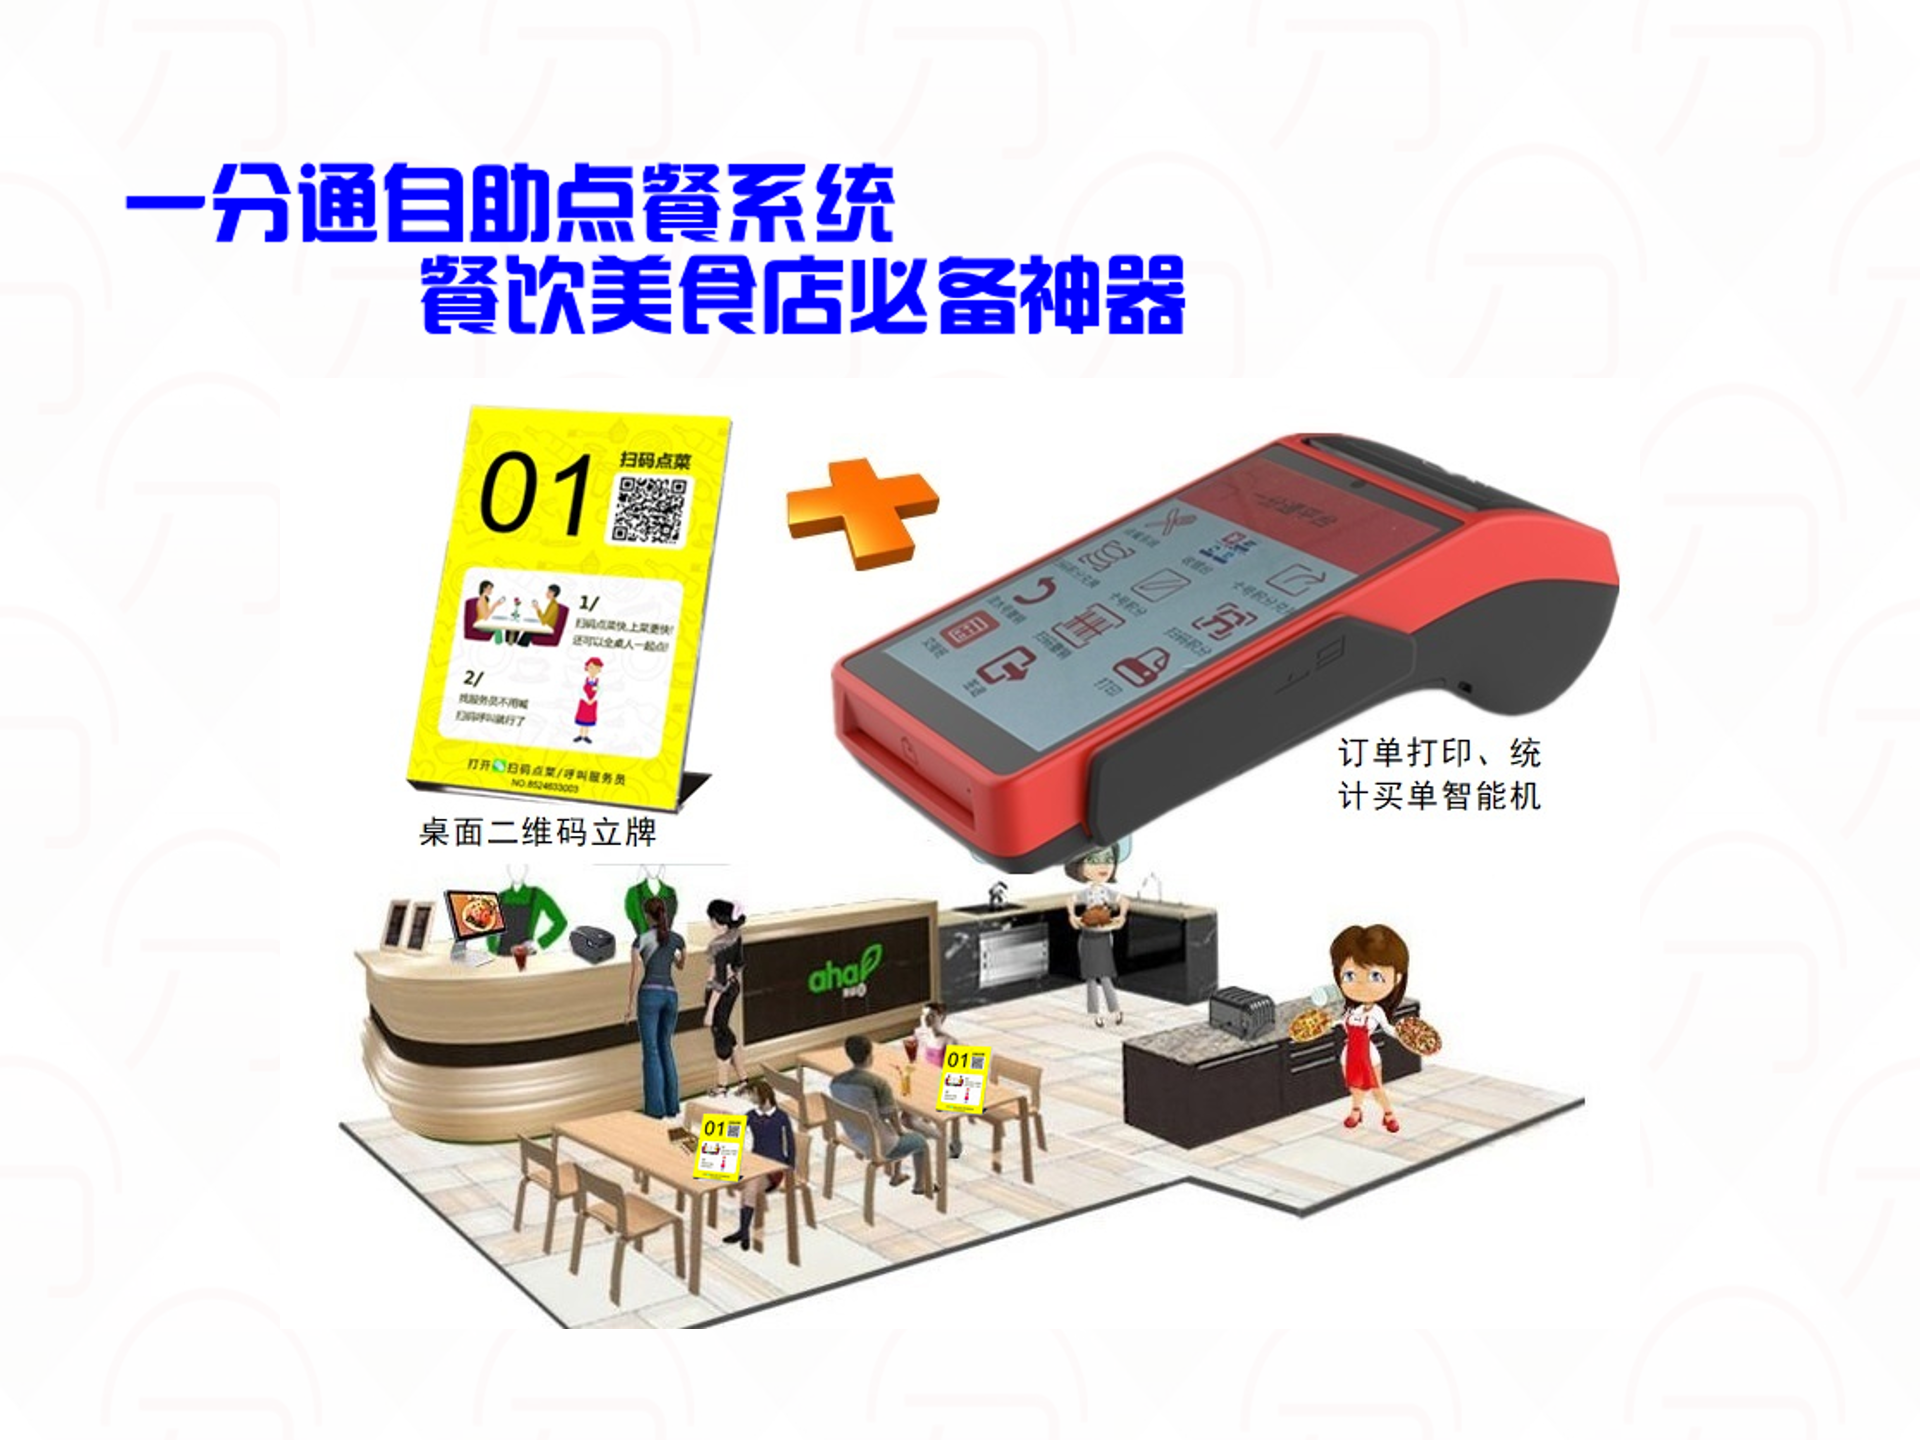 会员刷卡机厂家_会员刷卡机生产商相关-深圳市中贤在线技术有限公司